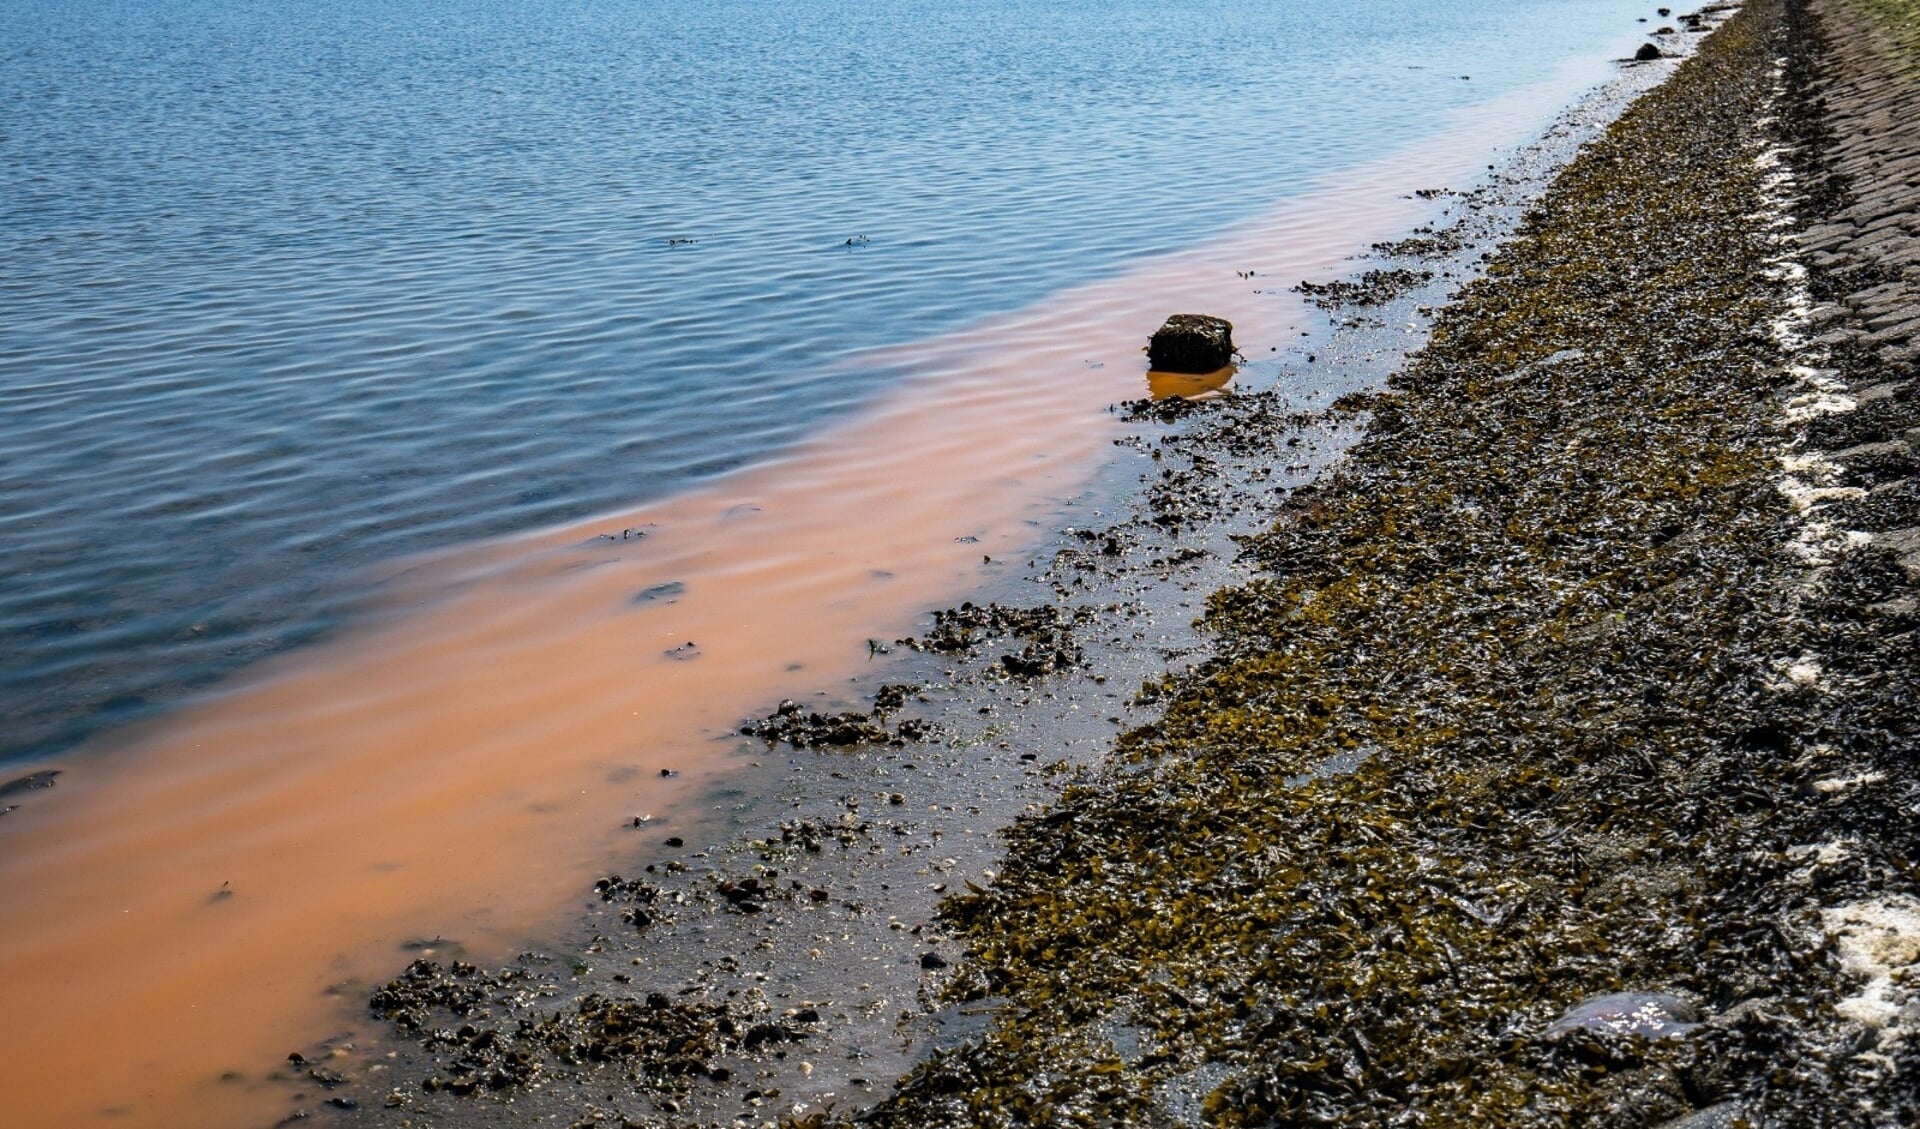 De merkwaardige oranje strook wordt veroorzaakt door zeevonk